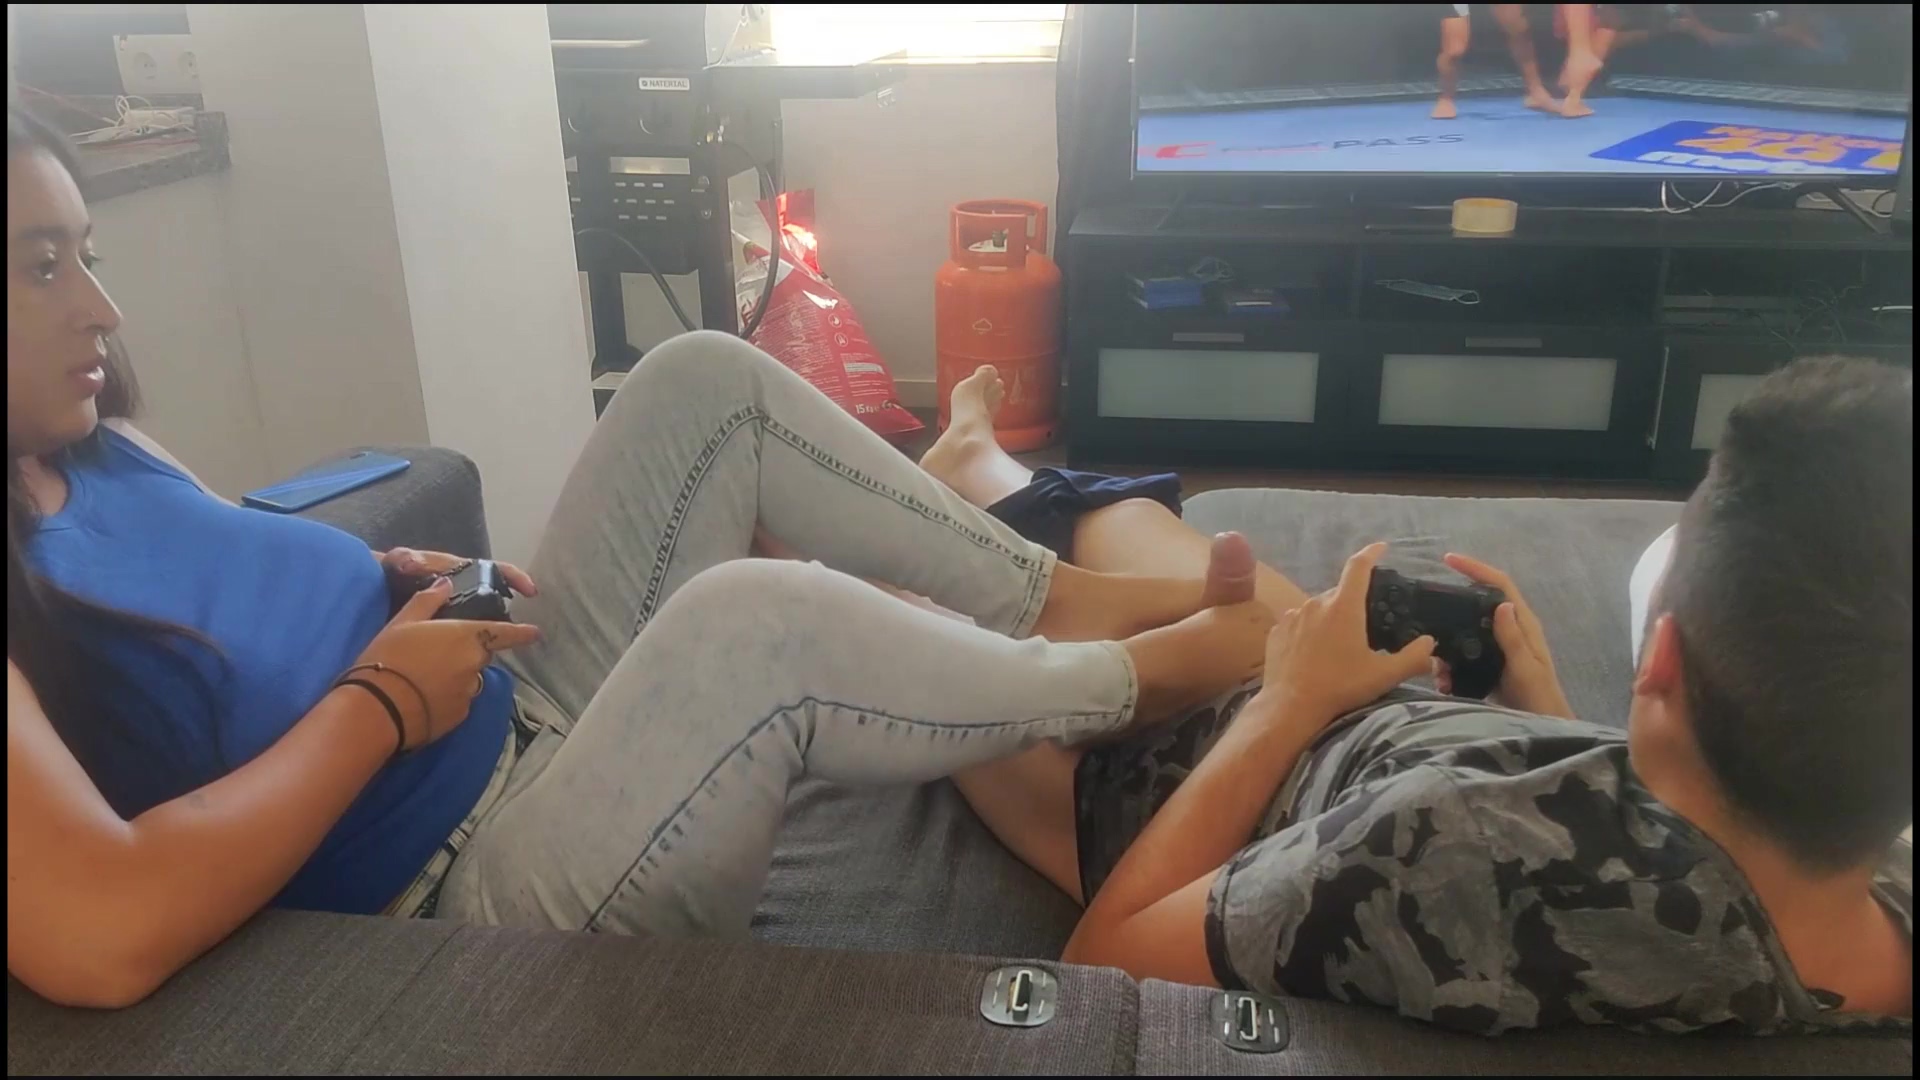 La petite amie dun ami donne un footjob pendant que nous jouons à la PS5 image